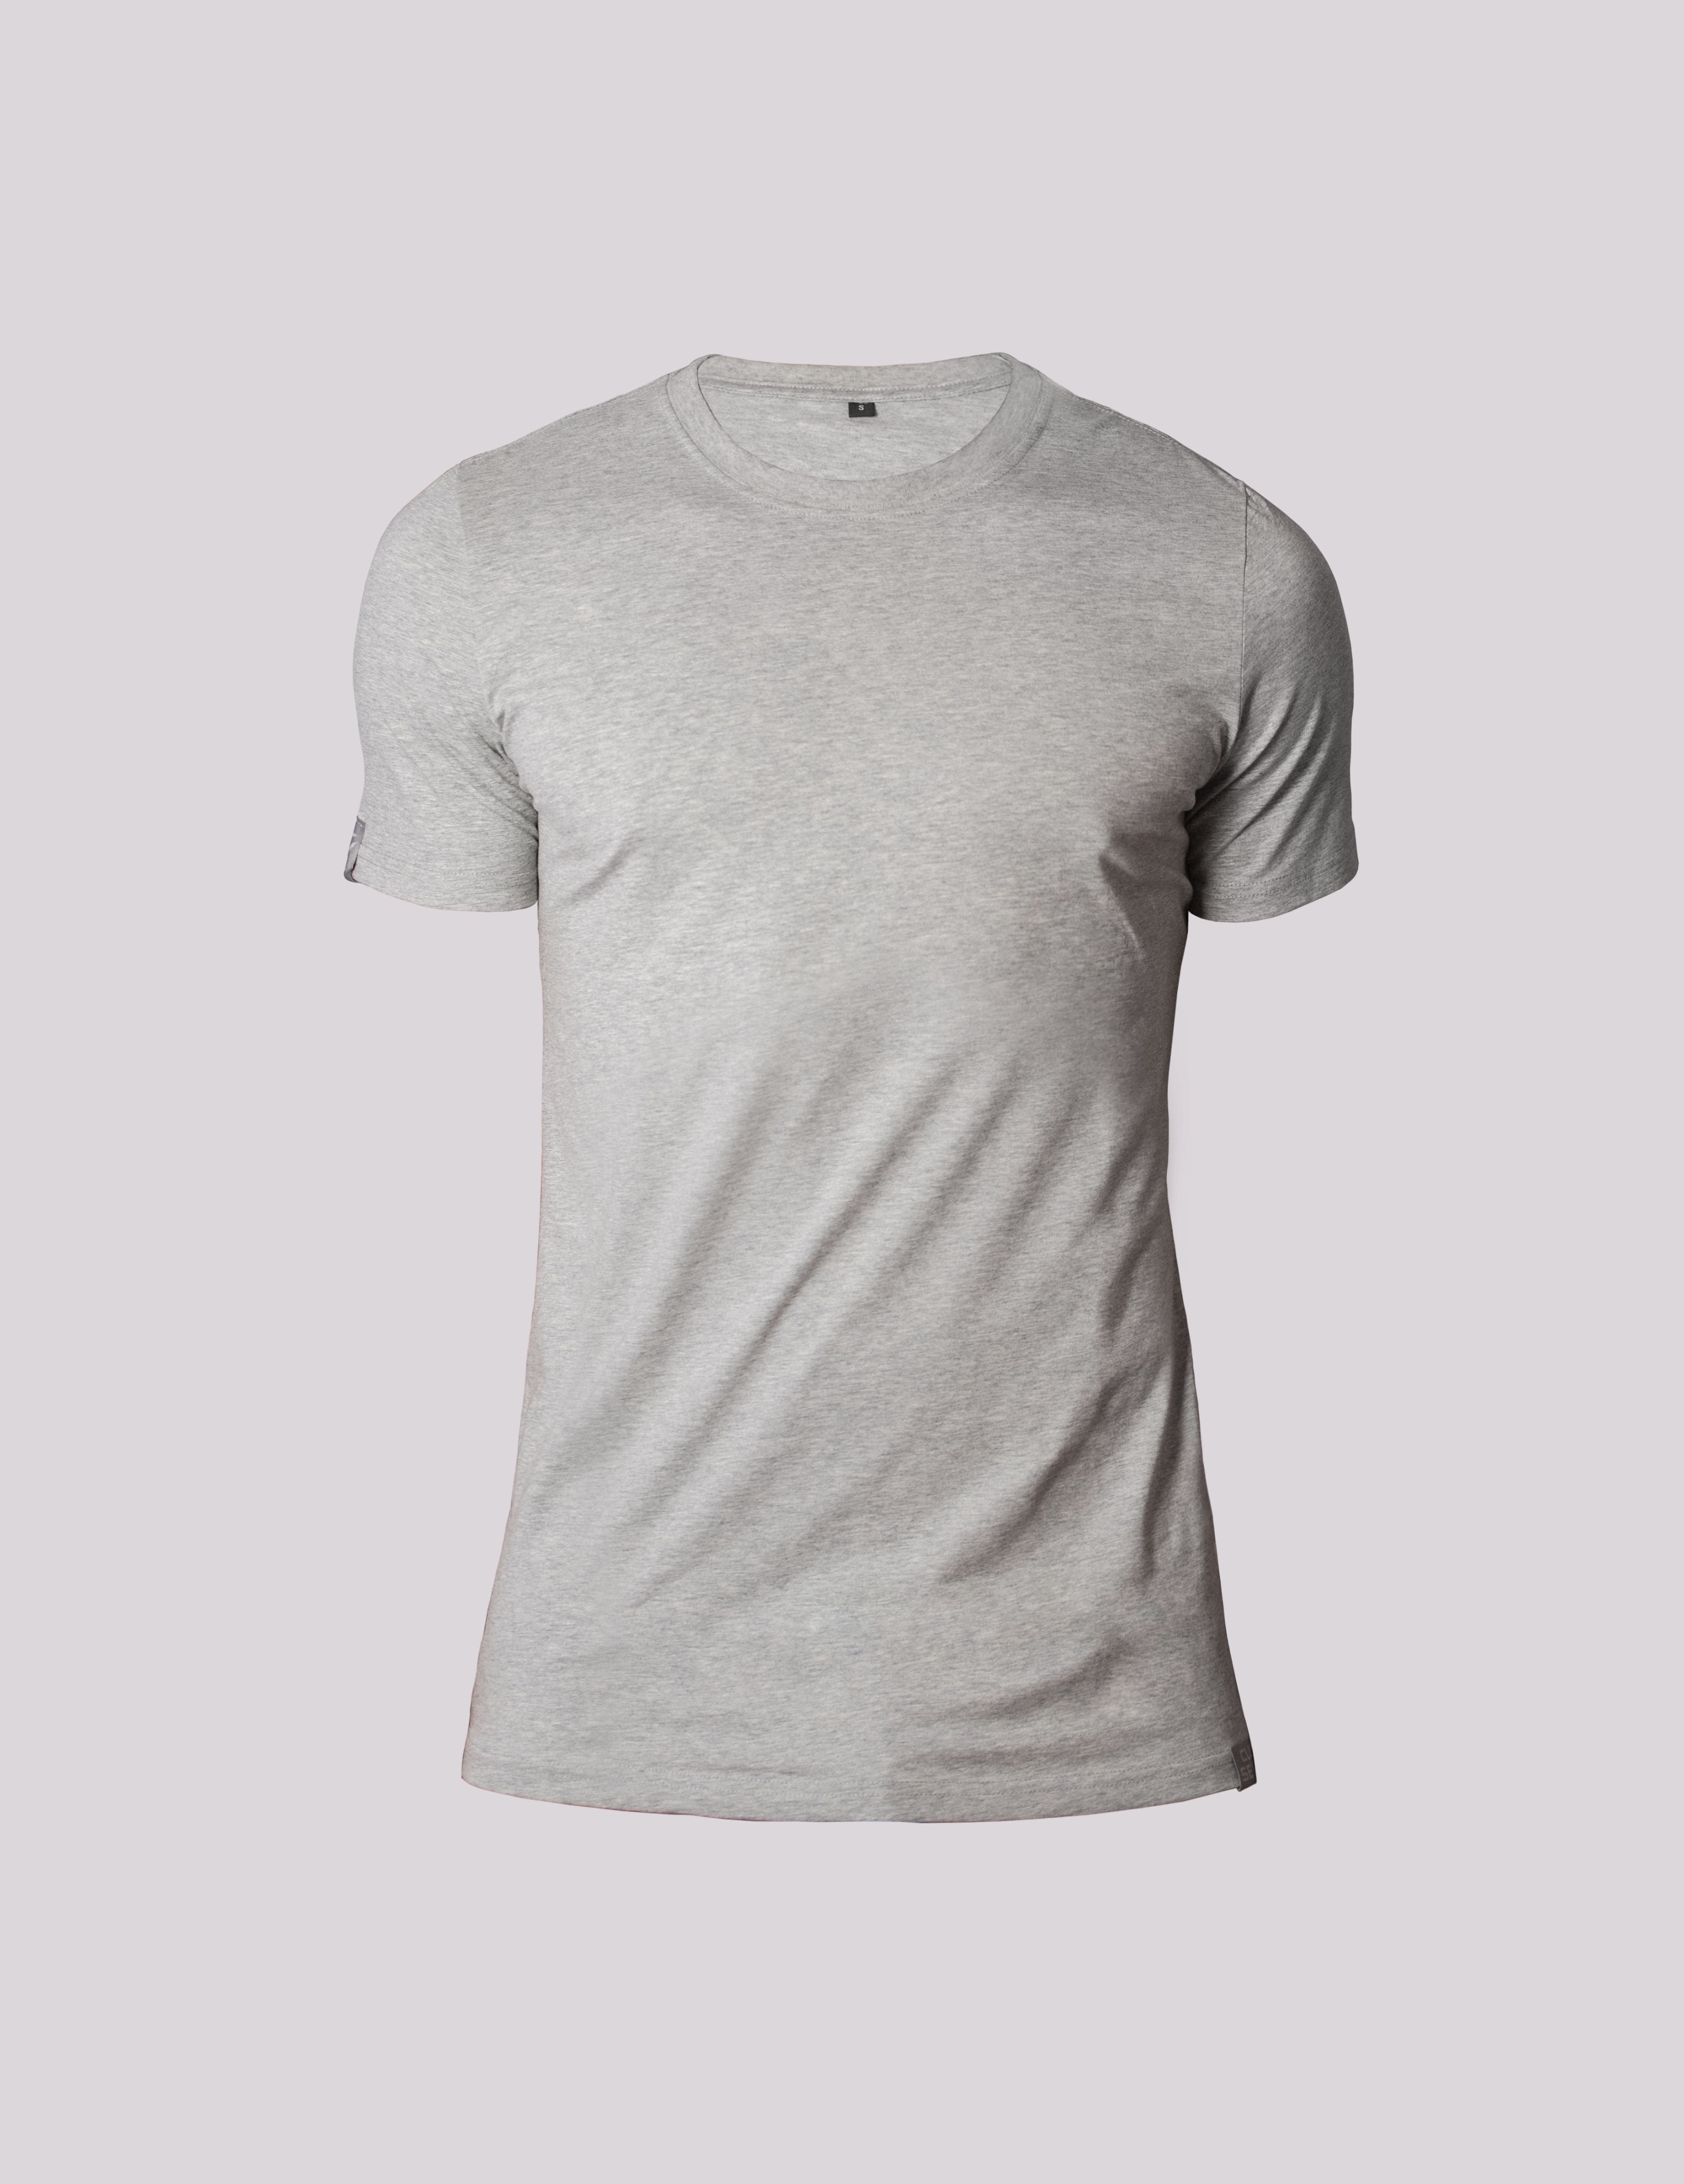 Luxuriöses graues T-Shirt für Herren